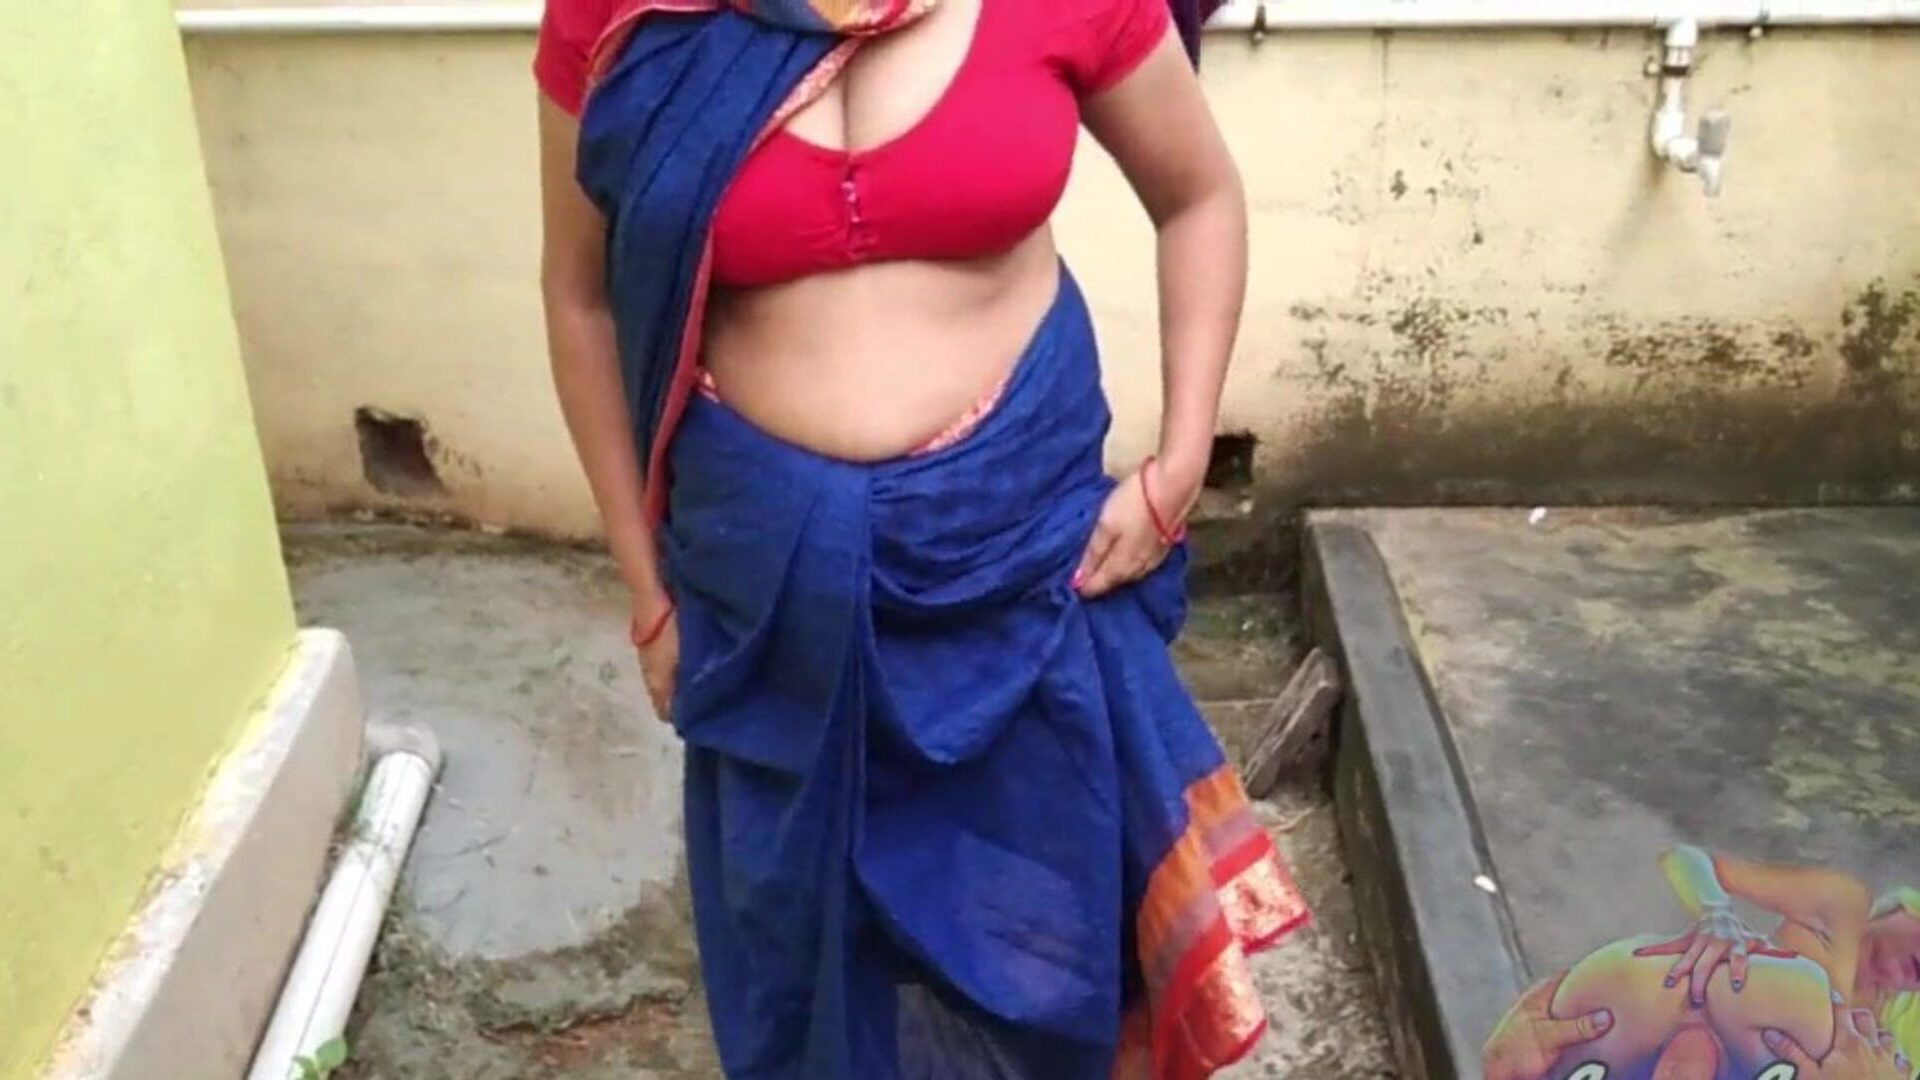 bhabhi en azul sari meando patio trasero mostrando sus períodos coño